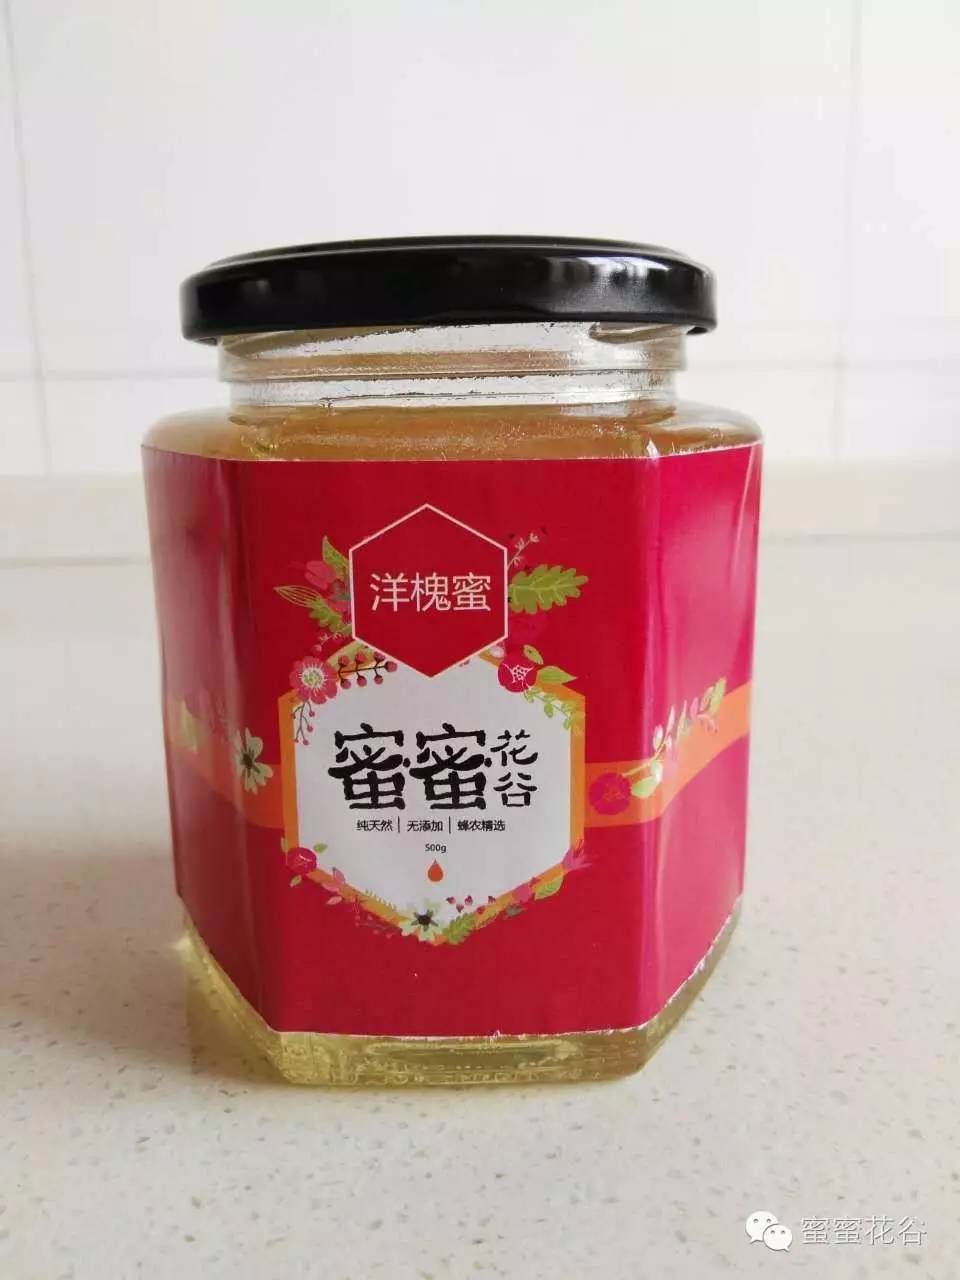 蜂花粉 罐装蜂蜜 中华蜂蜜 蜂蜜的种类 医疗保健